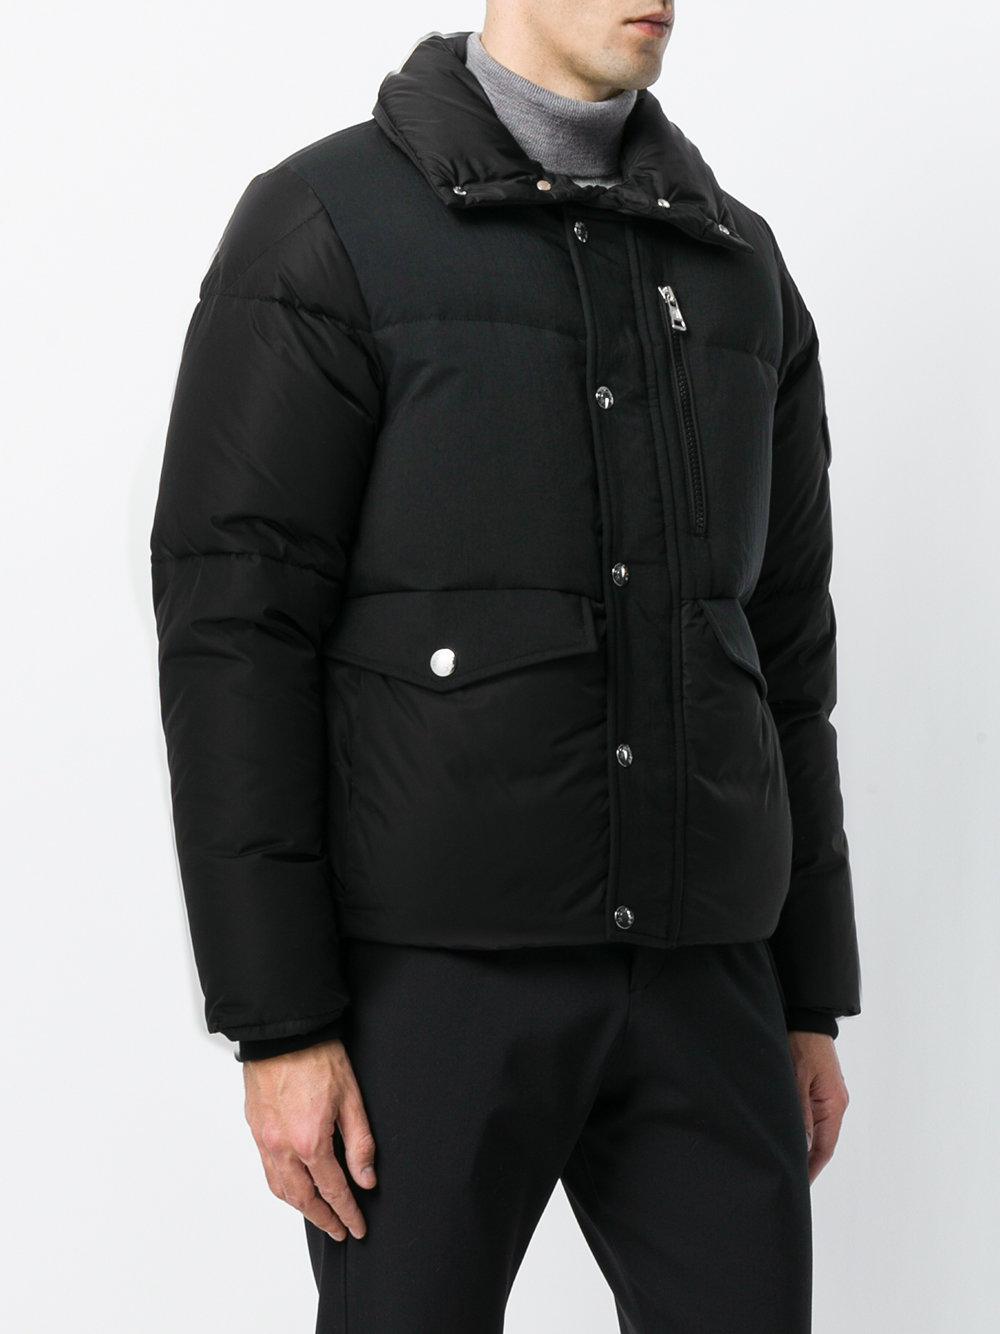 Lyst - Moncler Cuzco Winter Jacket in Black for Men